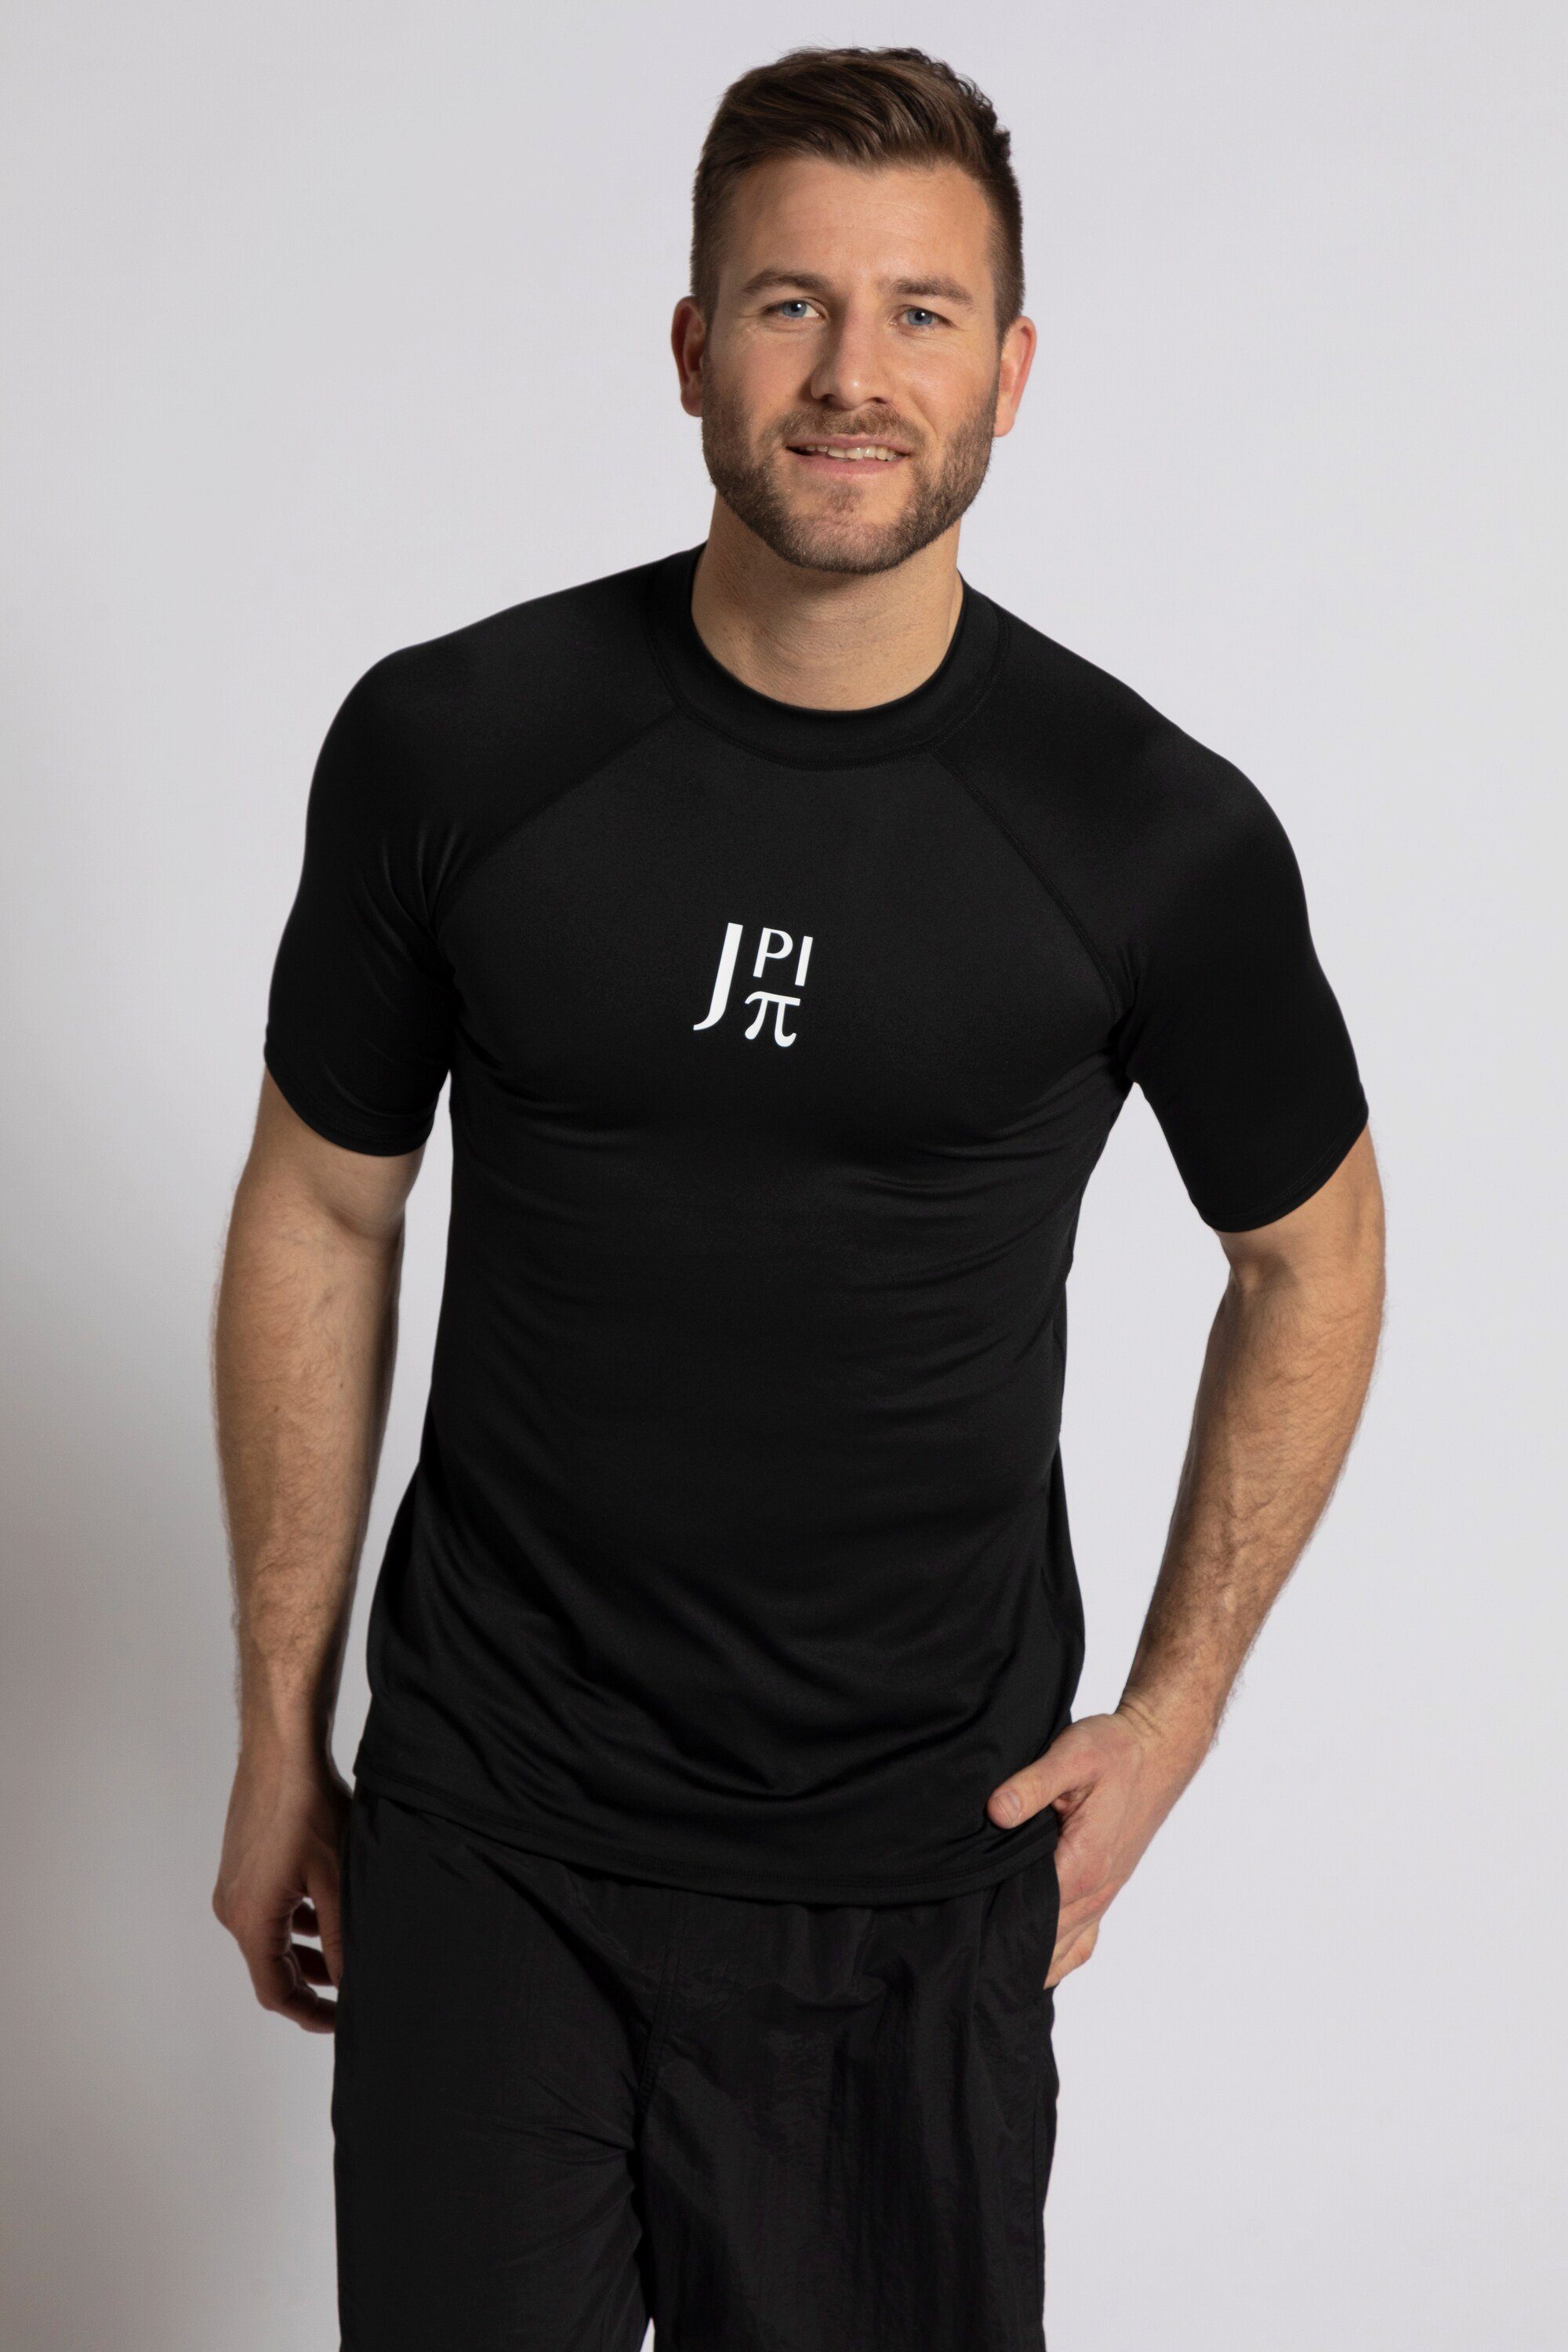 JP1880 T-Shirt Schwimmshirt Halbarm Stehkragen UV-Schutz schwarz